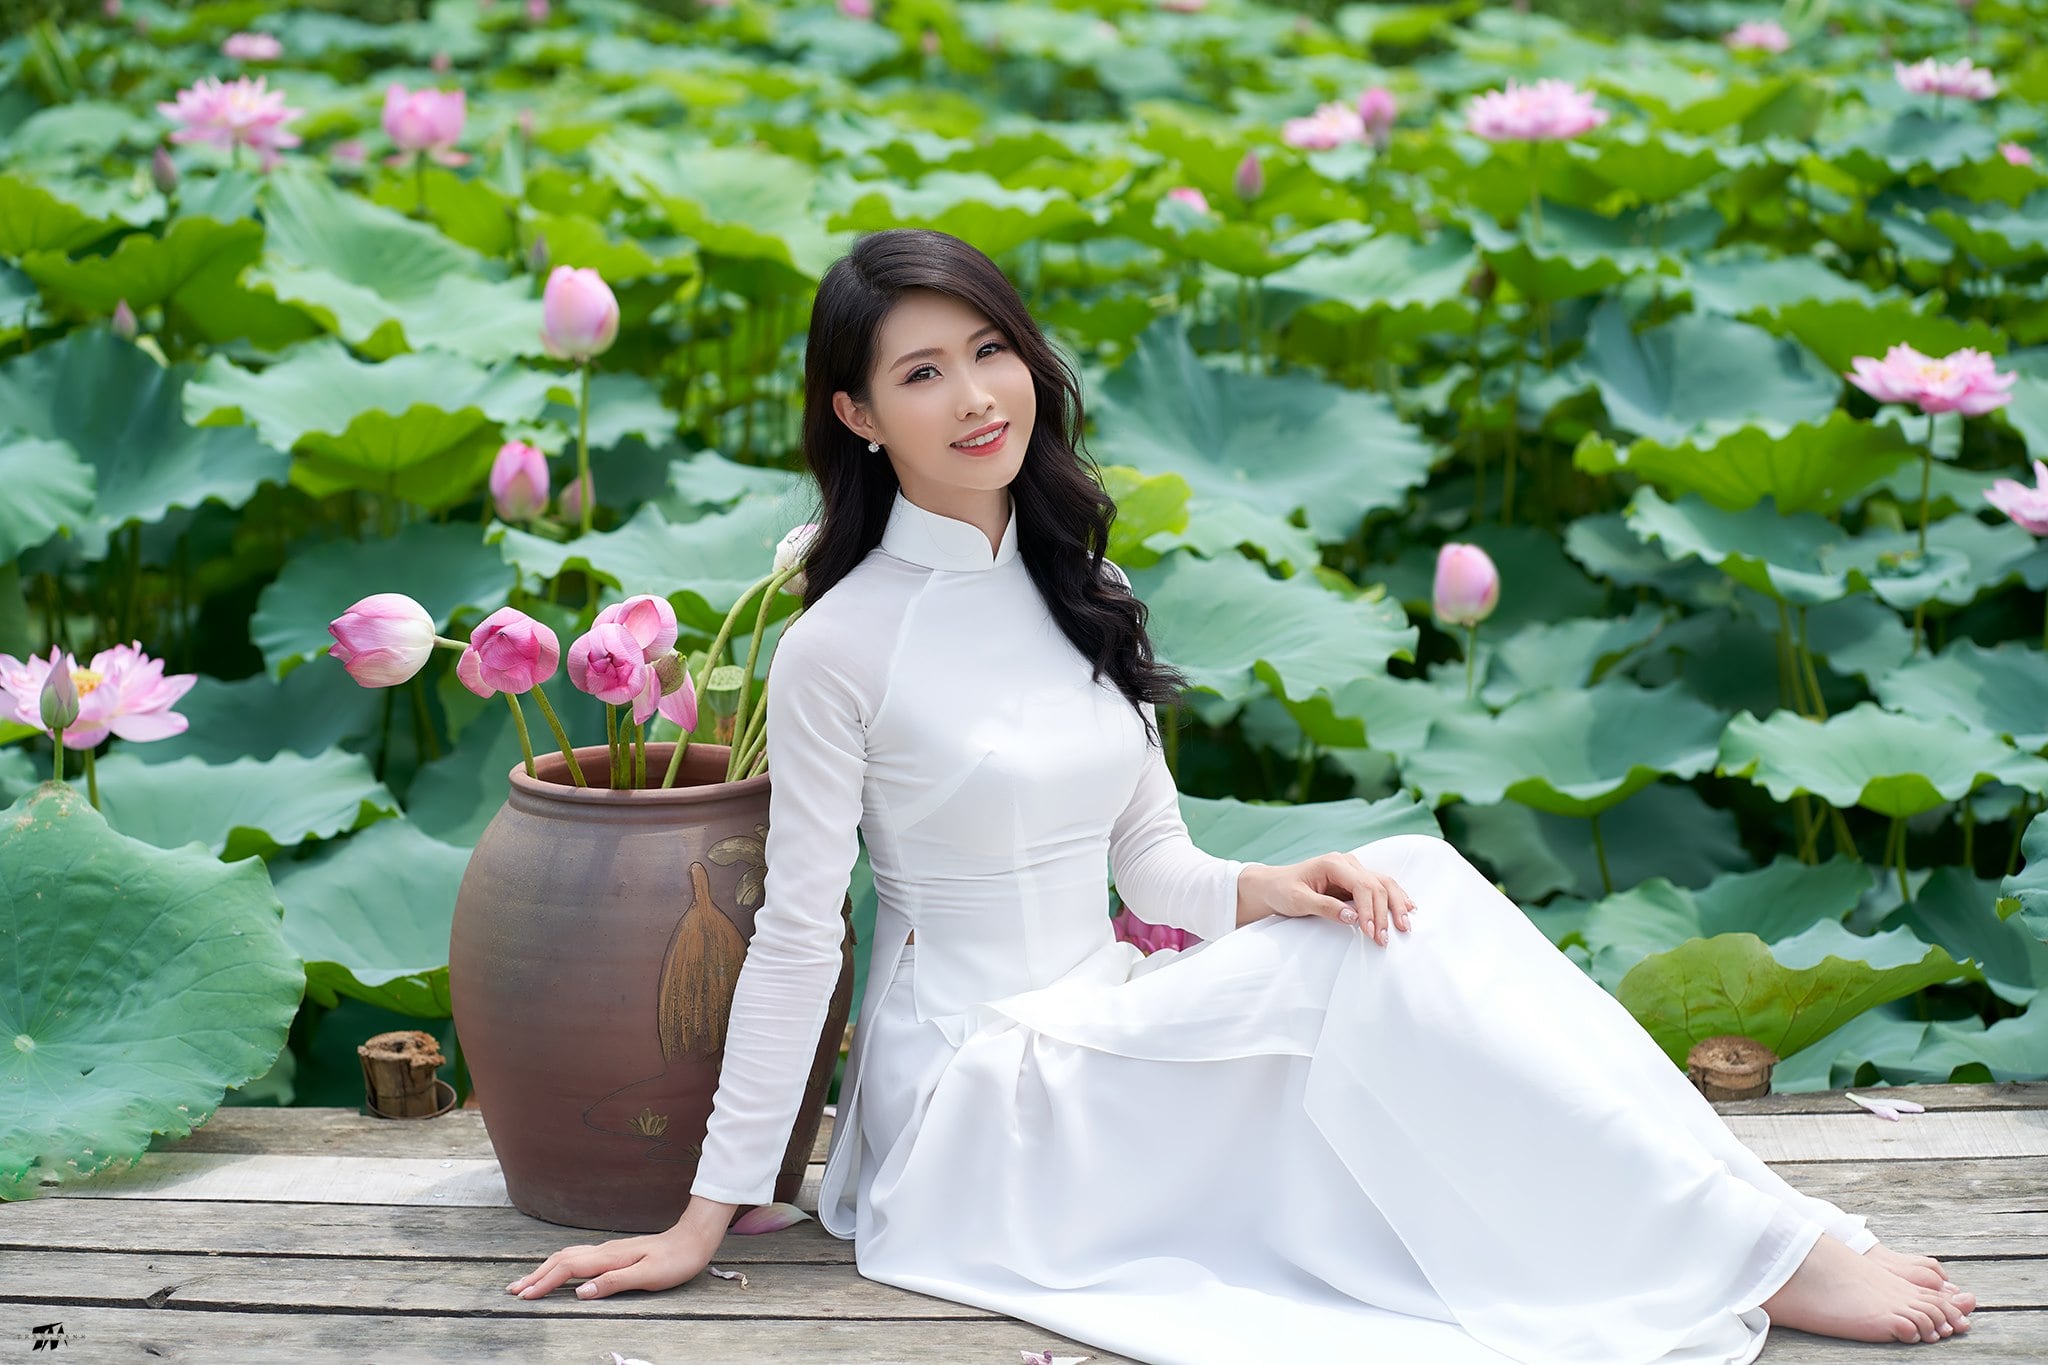 Áo dài hoa sen là một trong những trang phục đẹp và truyền thống nhất của Việt Nam. Hãy xem bức ảnh này để chiêm ngưỡng sự đẹp và độc đáo của áo dài hoa sen và cảm nhận được sức hút của trang phục này.